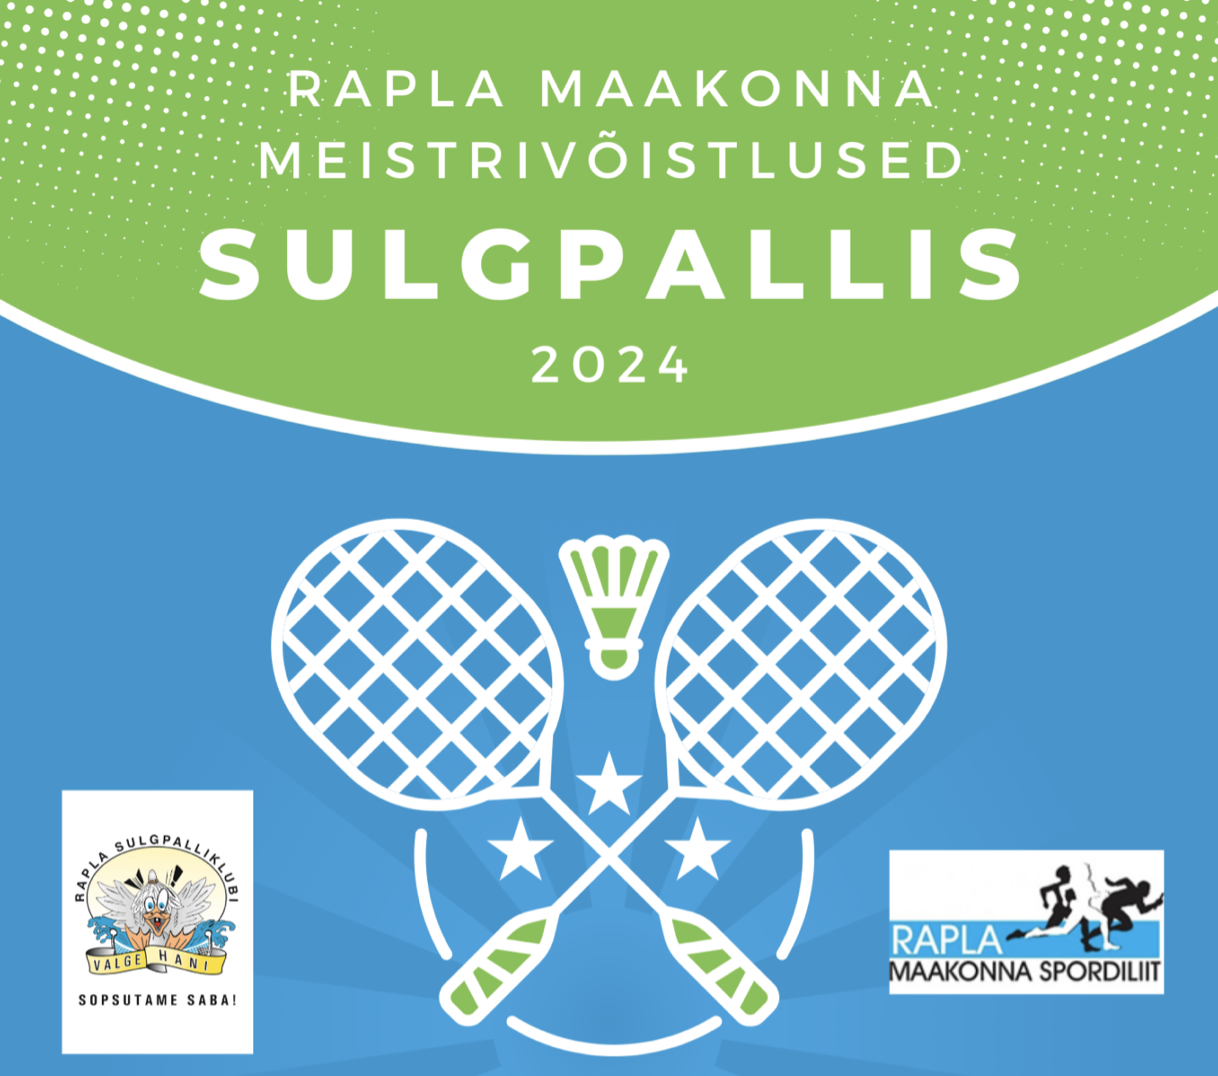 sulgpalli MV rapla maakonna meistrivõistlused 2024 Märjamaa Valla Spordikeskuses